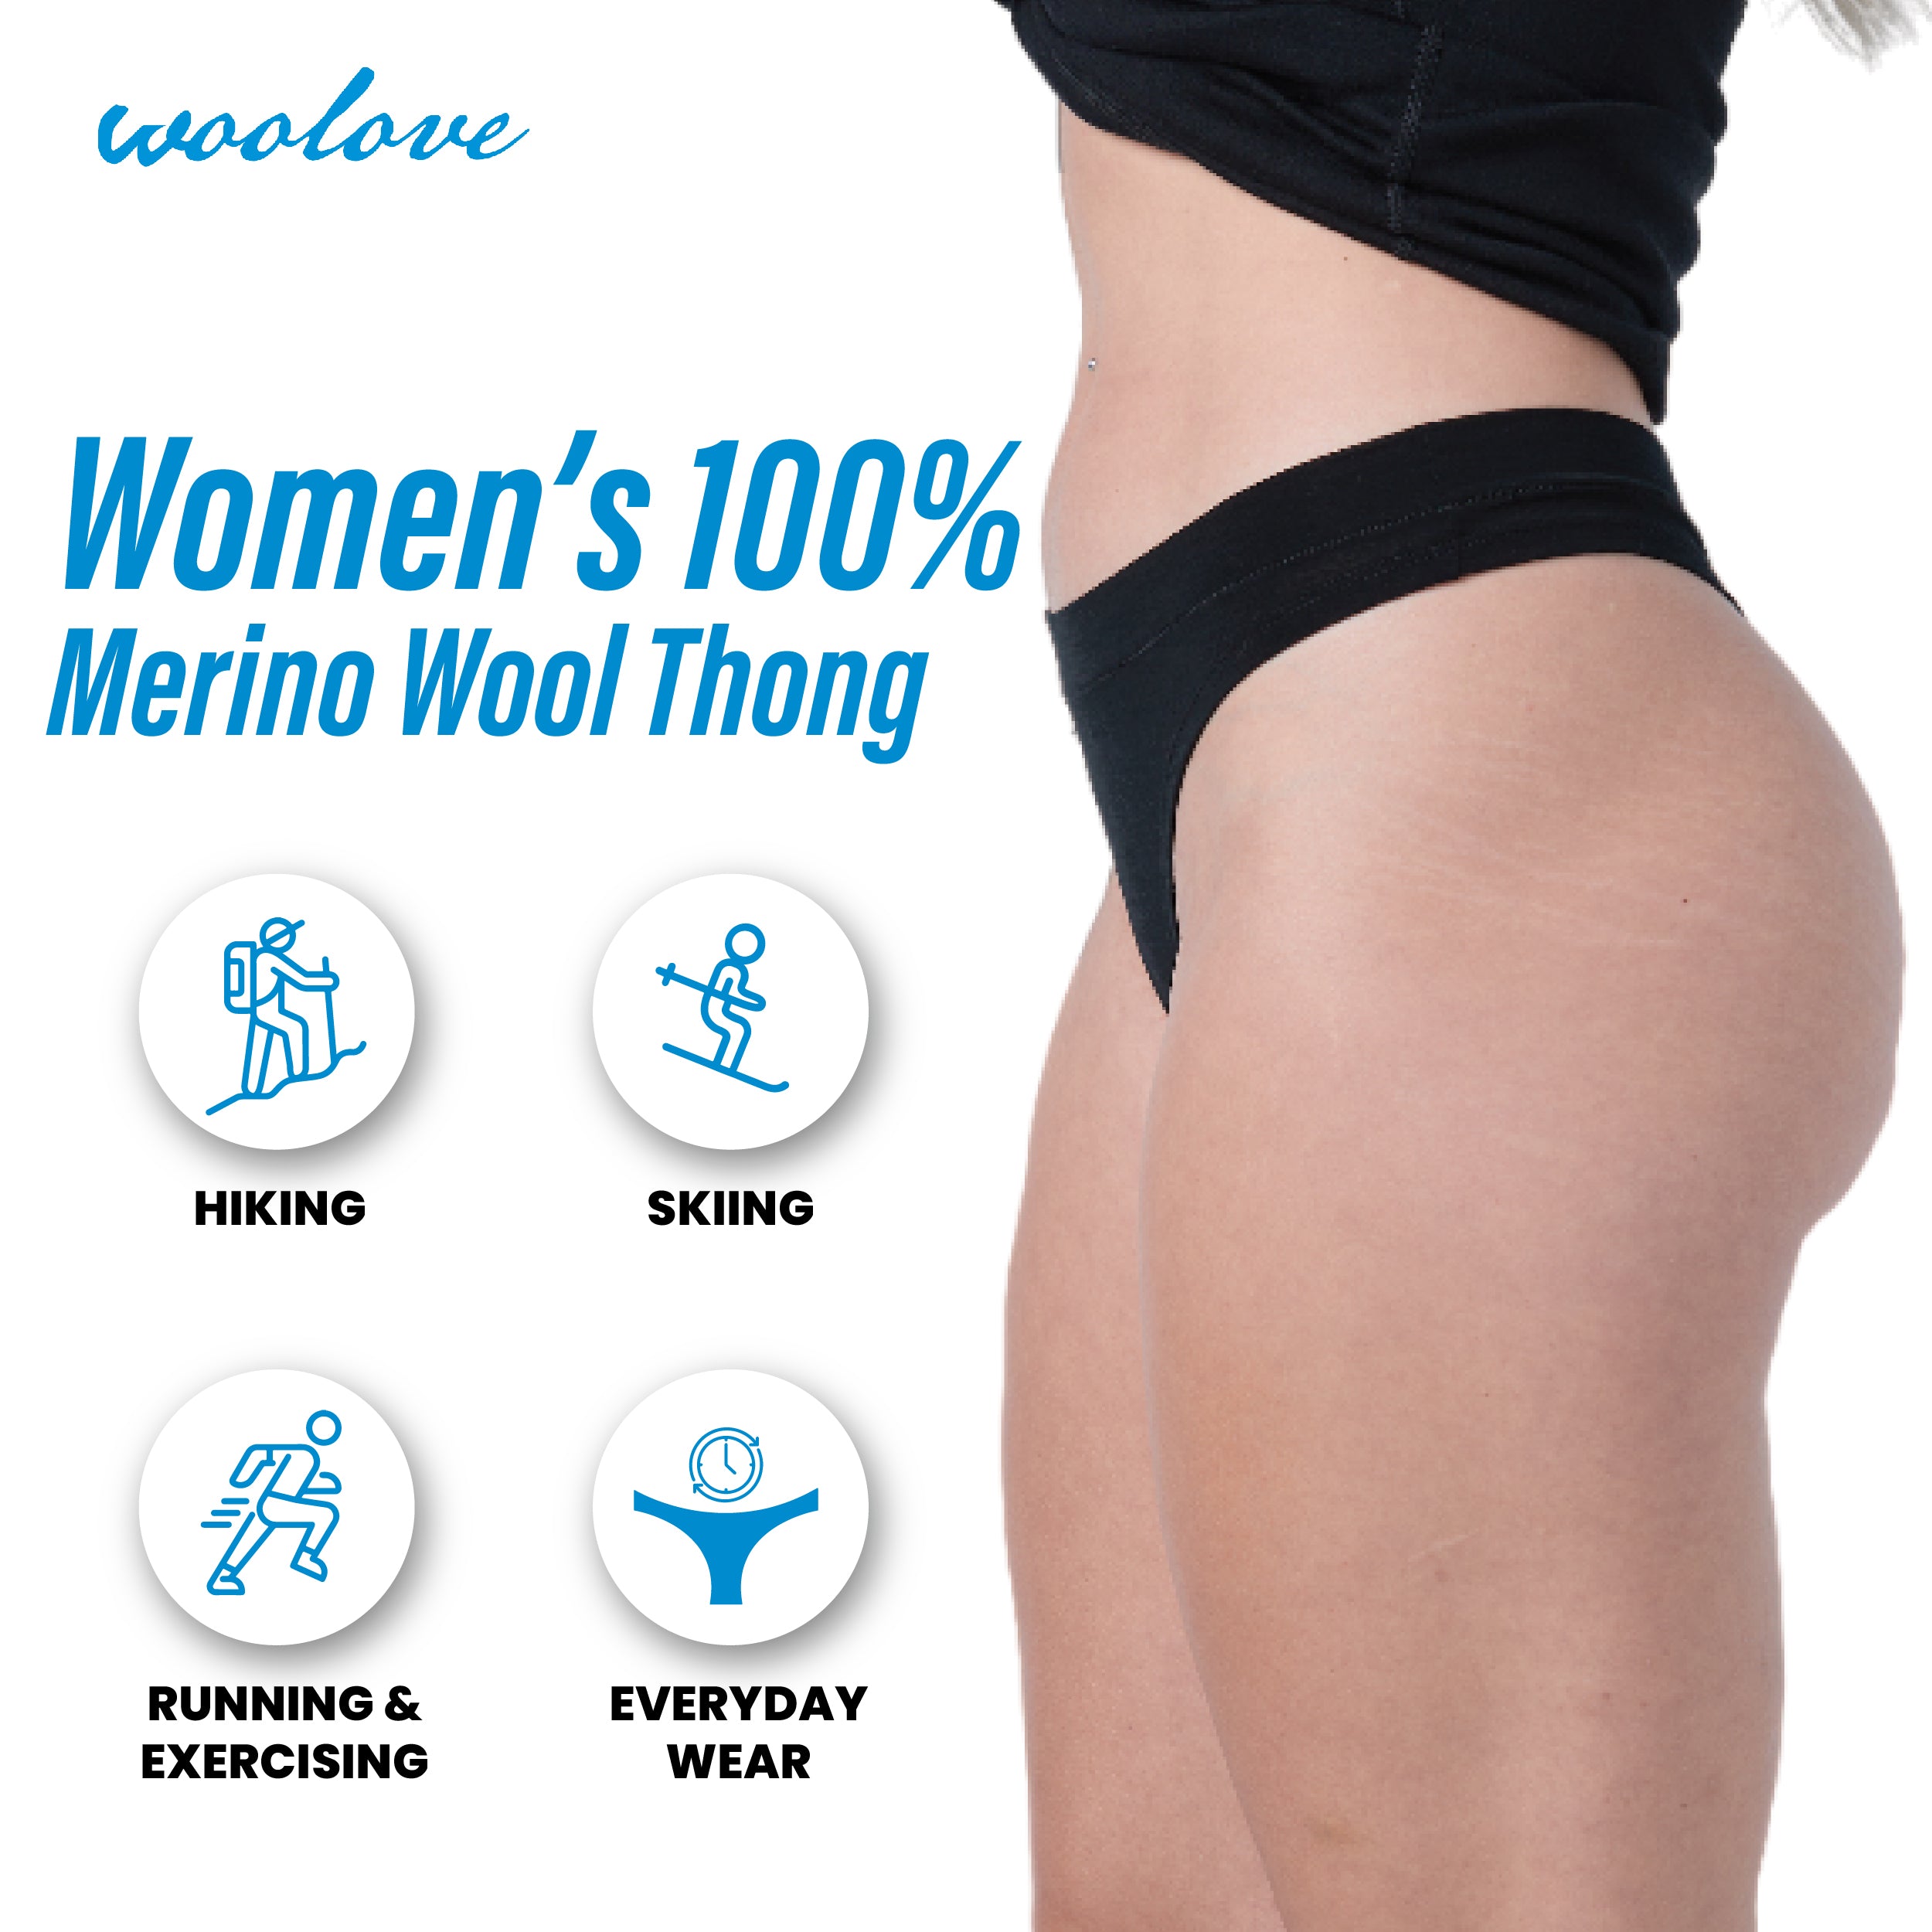 Woolove Men's 100% Merino Wool Boxer Brief Underwear - Anti-Odour